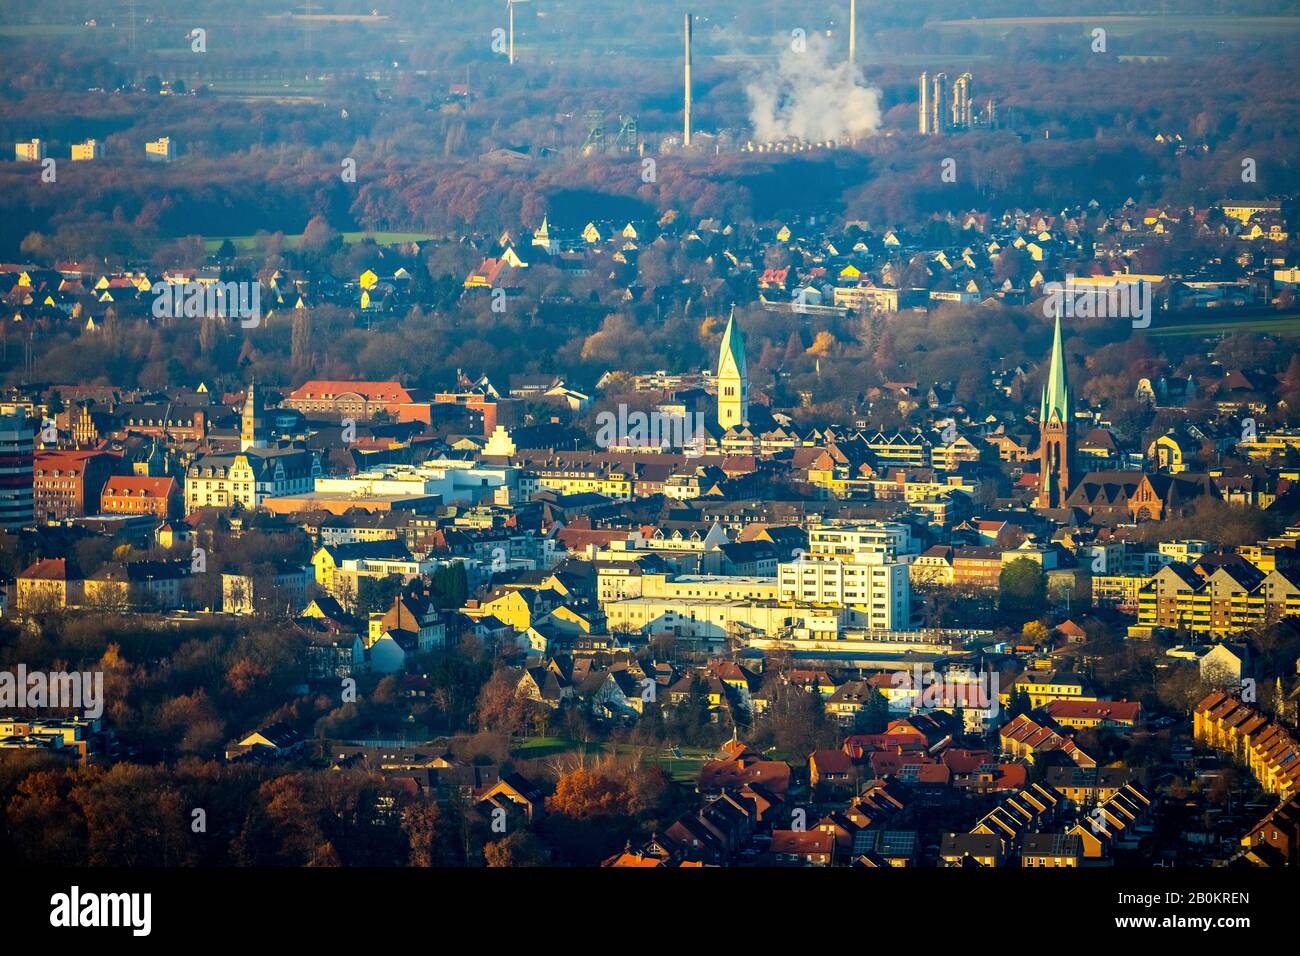 Luftbild, Blick in die Innenstadt, Propsteikirche St. Lamberti Kirche, Christuskirche, Rathaus mit Turm, Blick nach Norden zum Uniper-Kraftwerk, Gladbeck, Ru Stockfoto